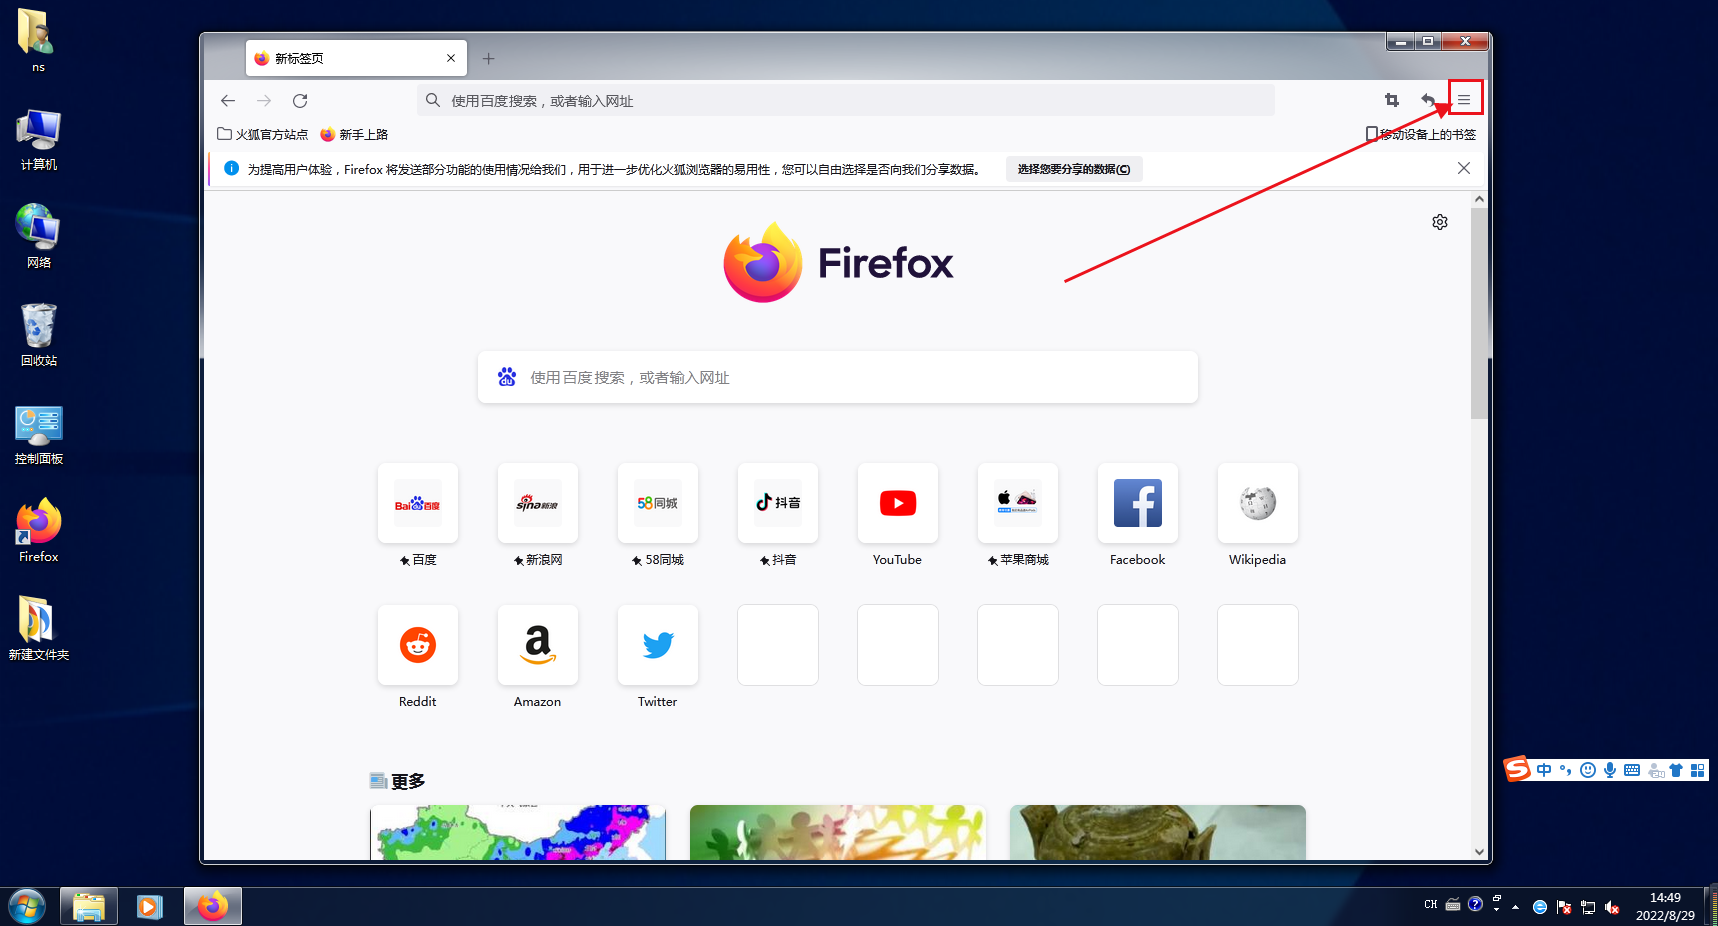 火狐浏览器 64bit 汉化版